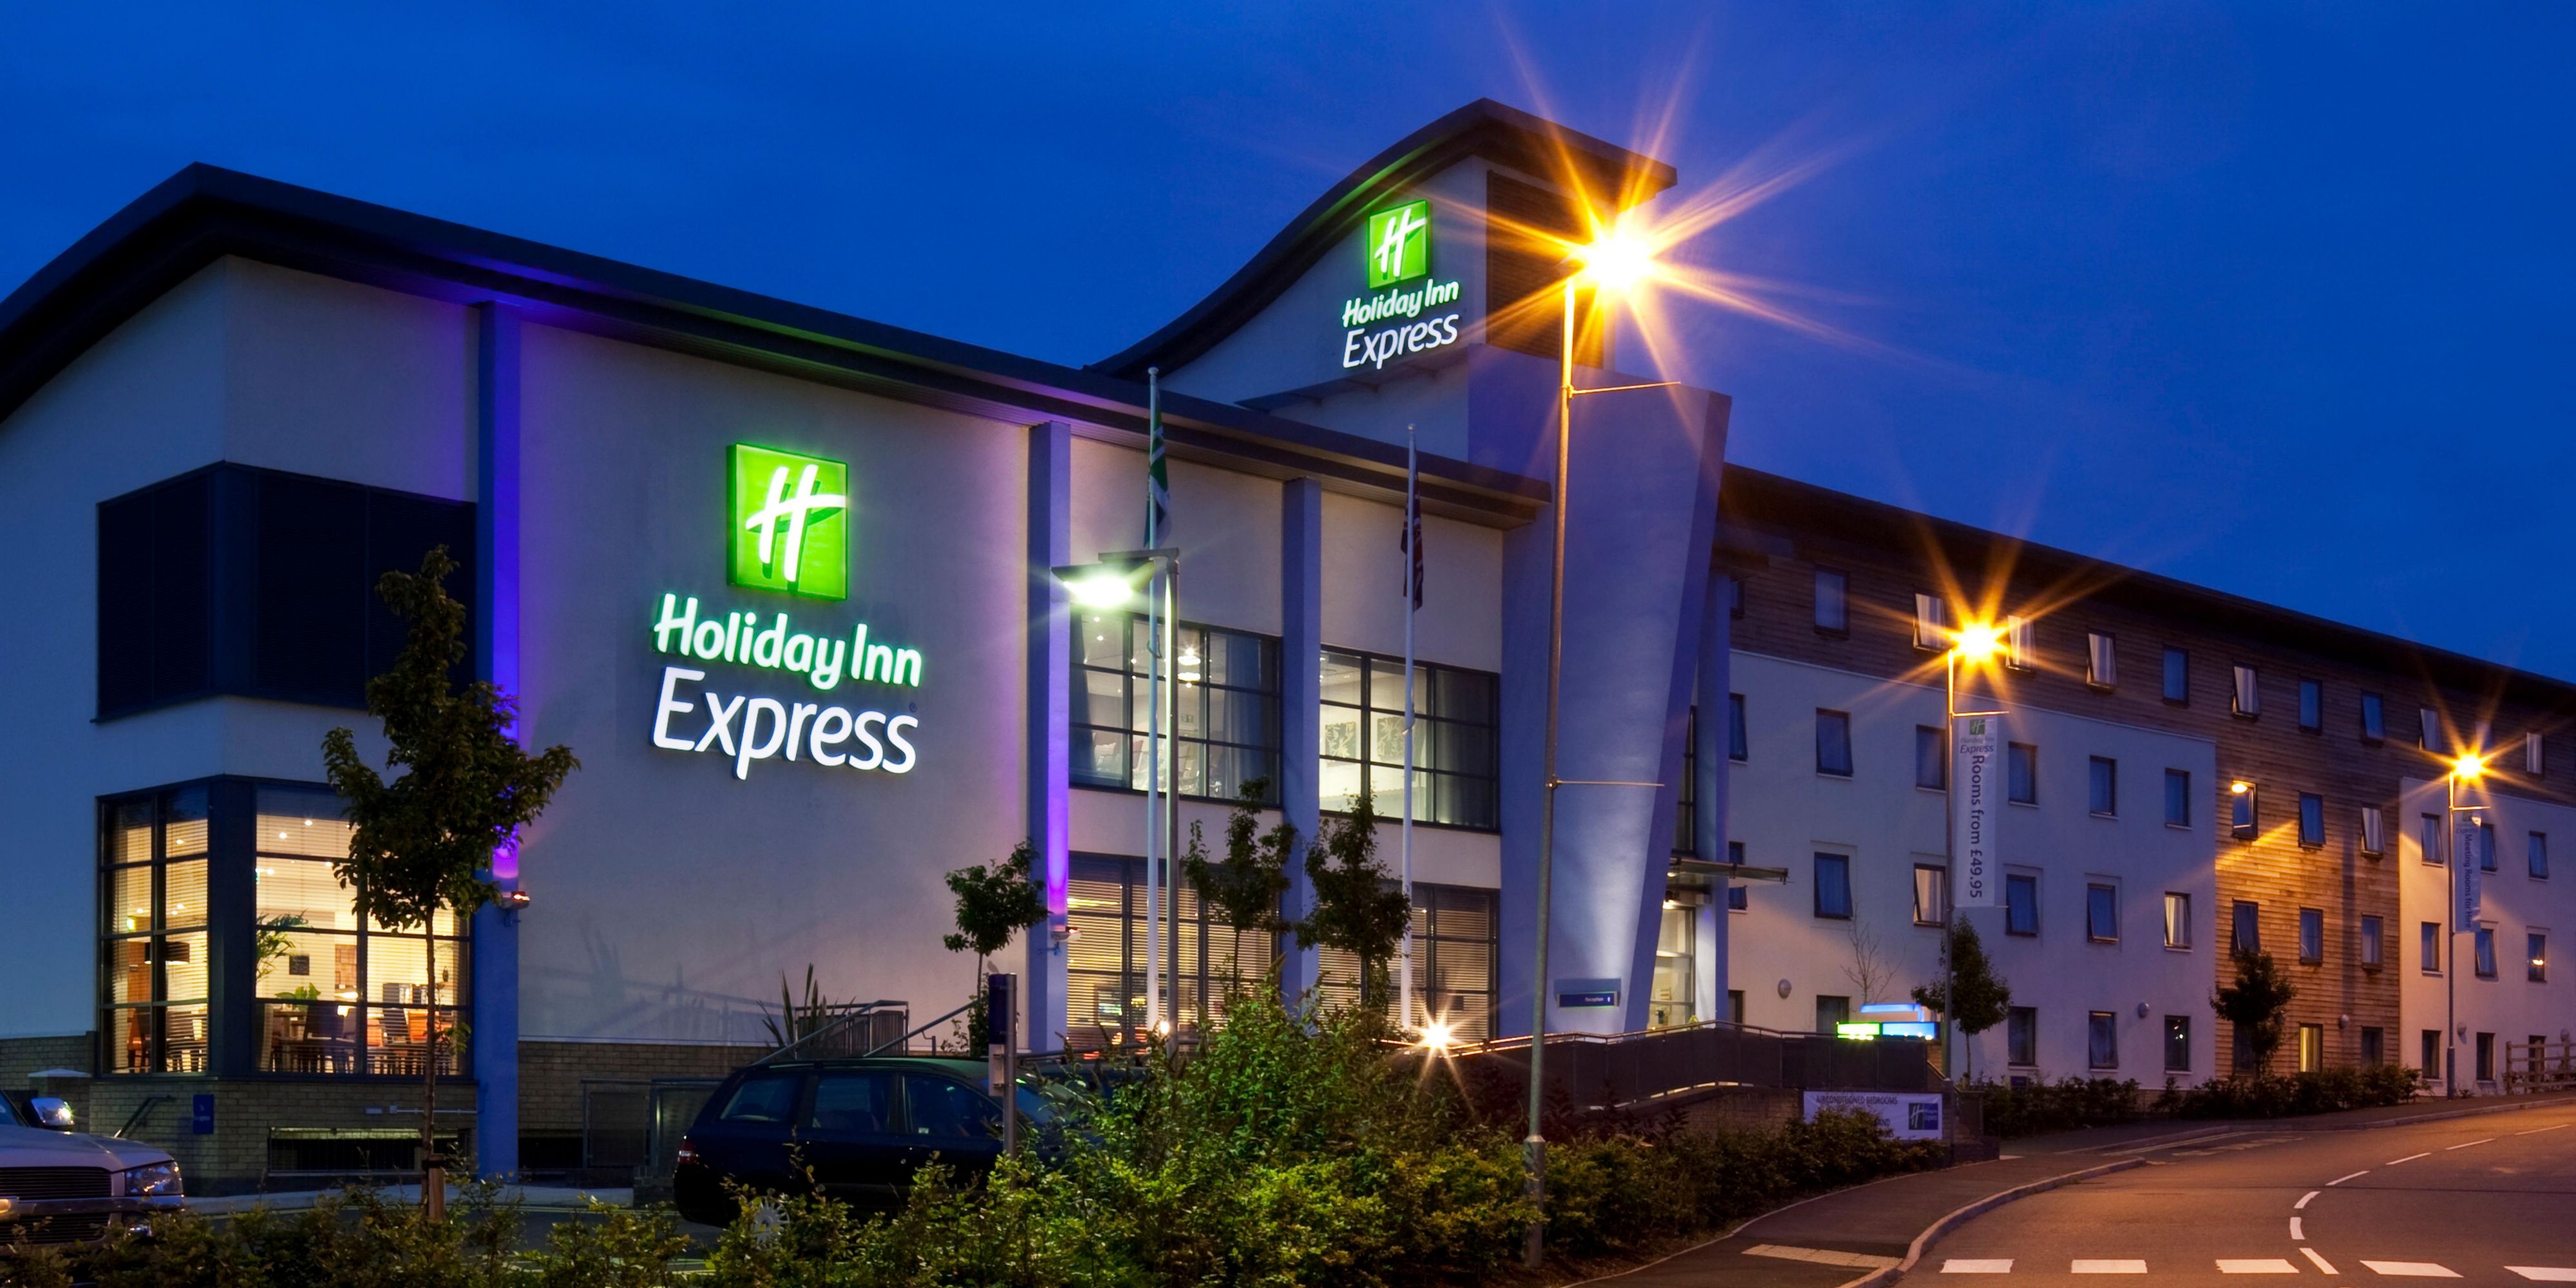 Holiday Inn Express Birmingham - Walsall Map & Driving ...